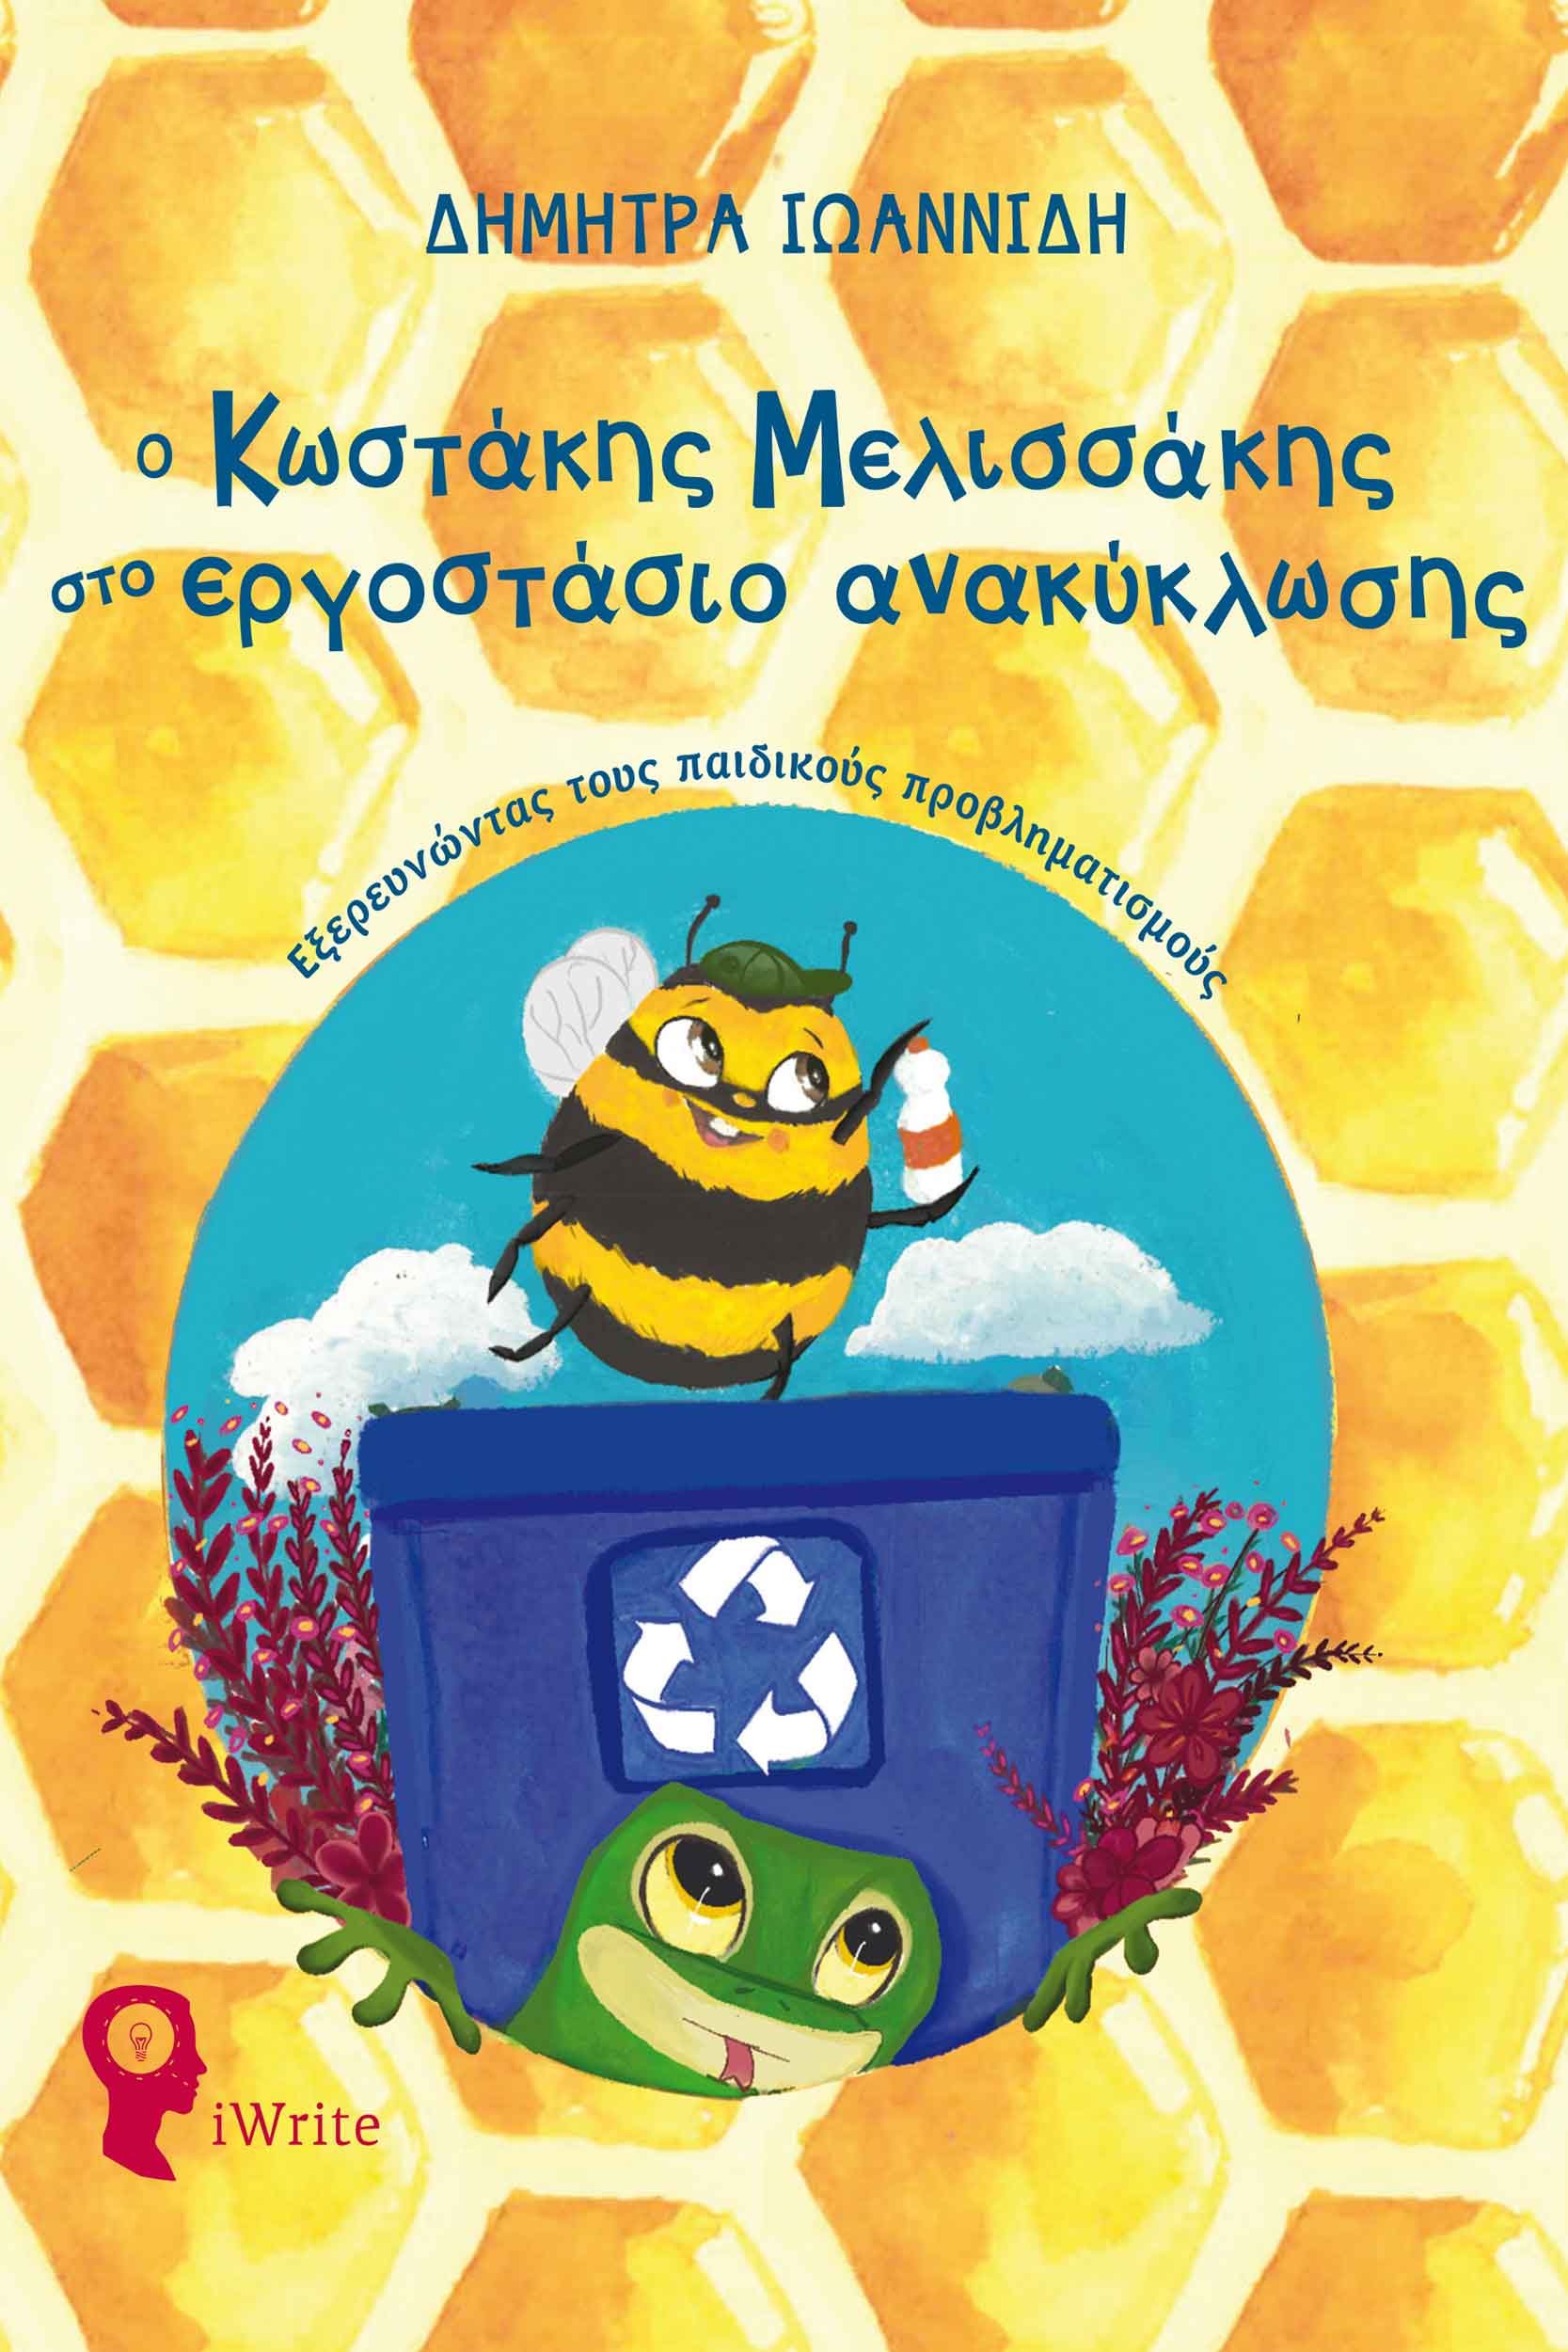 Ο Κωστάκης Μελισσάκης στο εργοστάσιο ανακύκλωσης